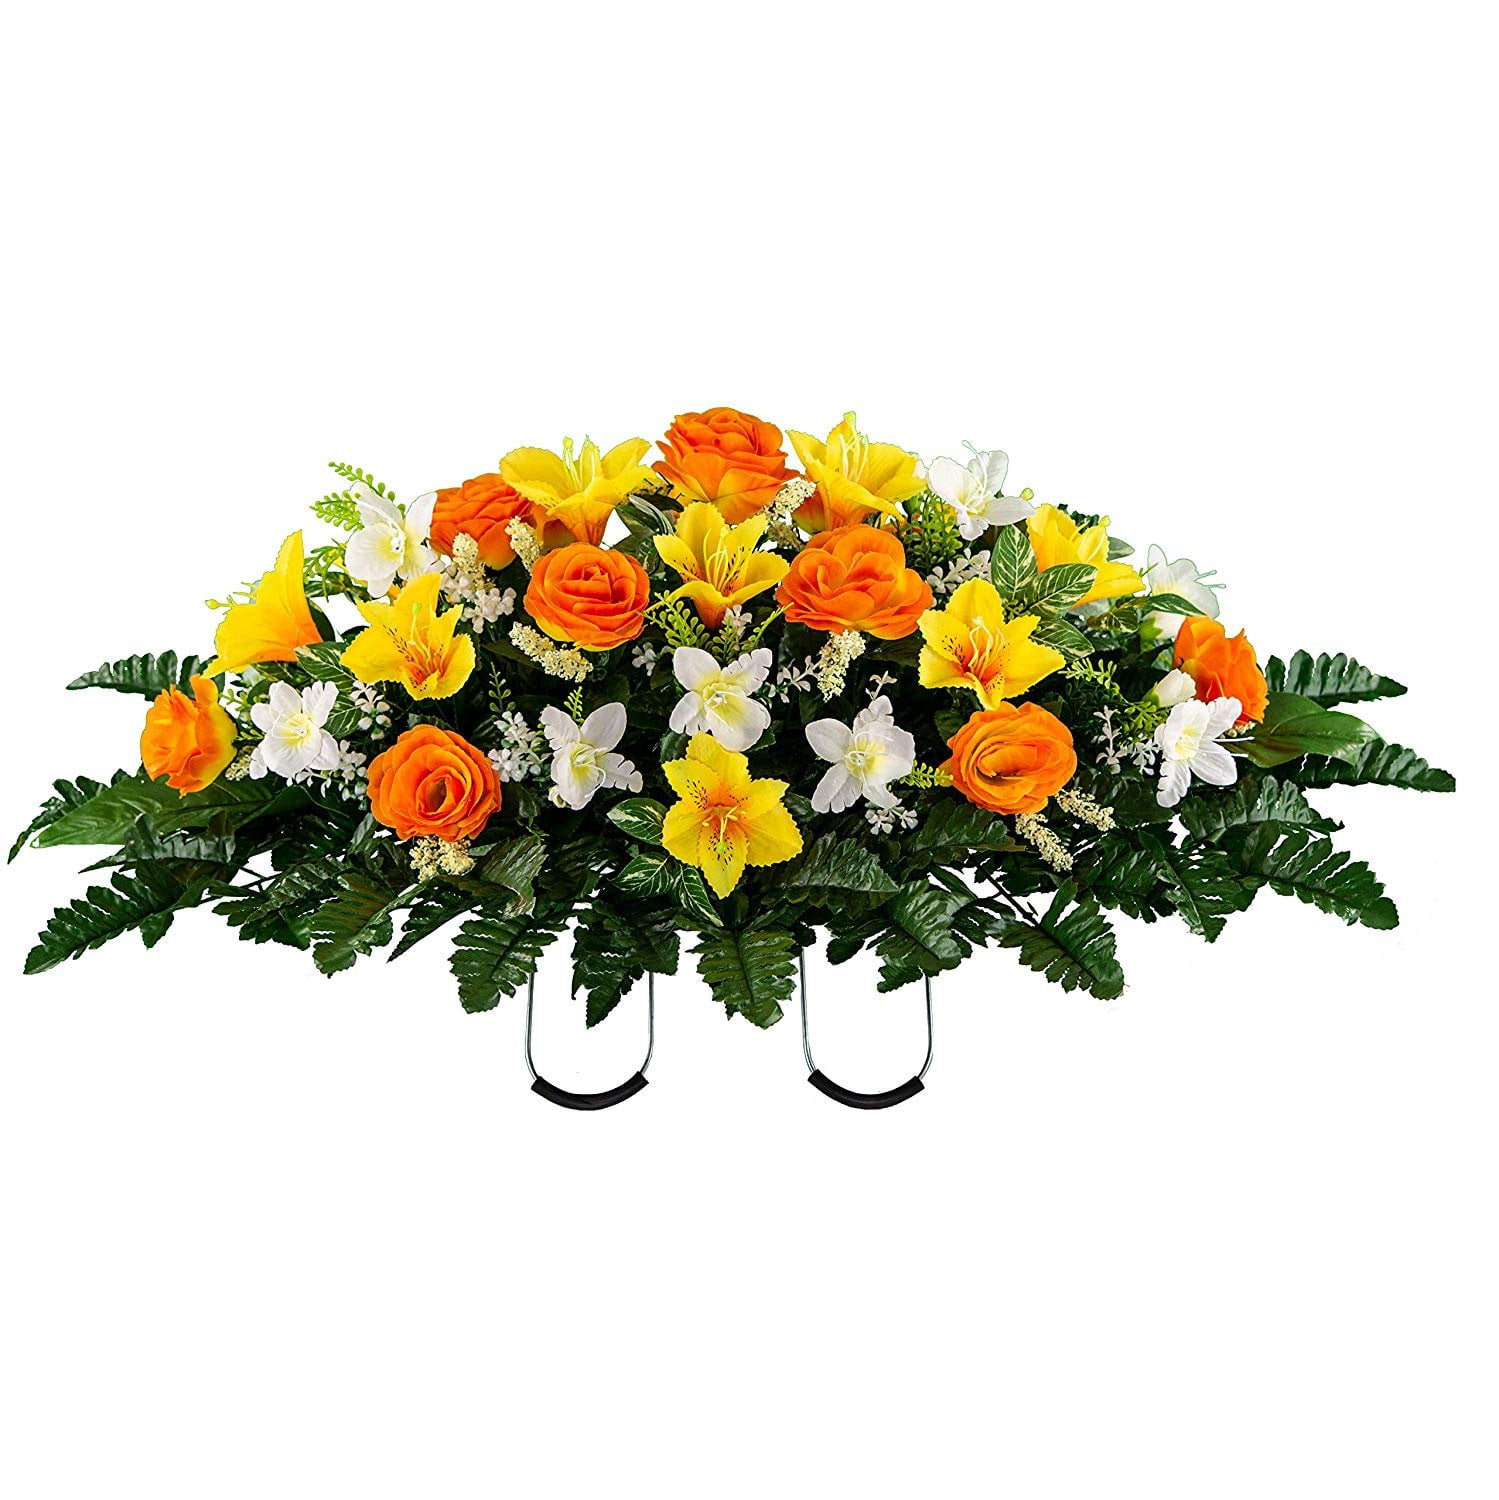 Искусственные цветы на кладбище. Валберис искусственные цветы на кладбище. Искусственные цветы на кладбище название. Могильные цветы оранжевые.